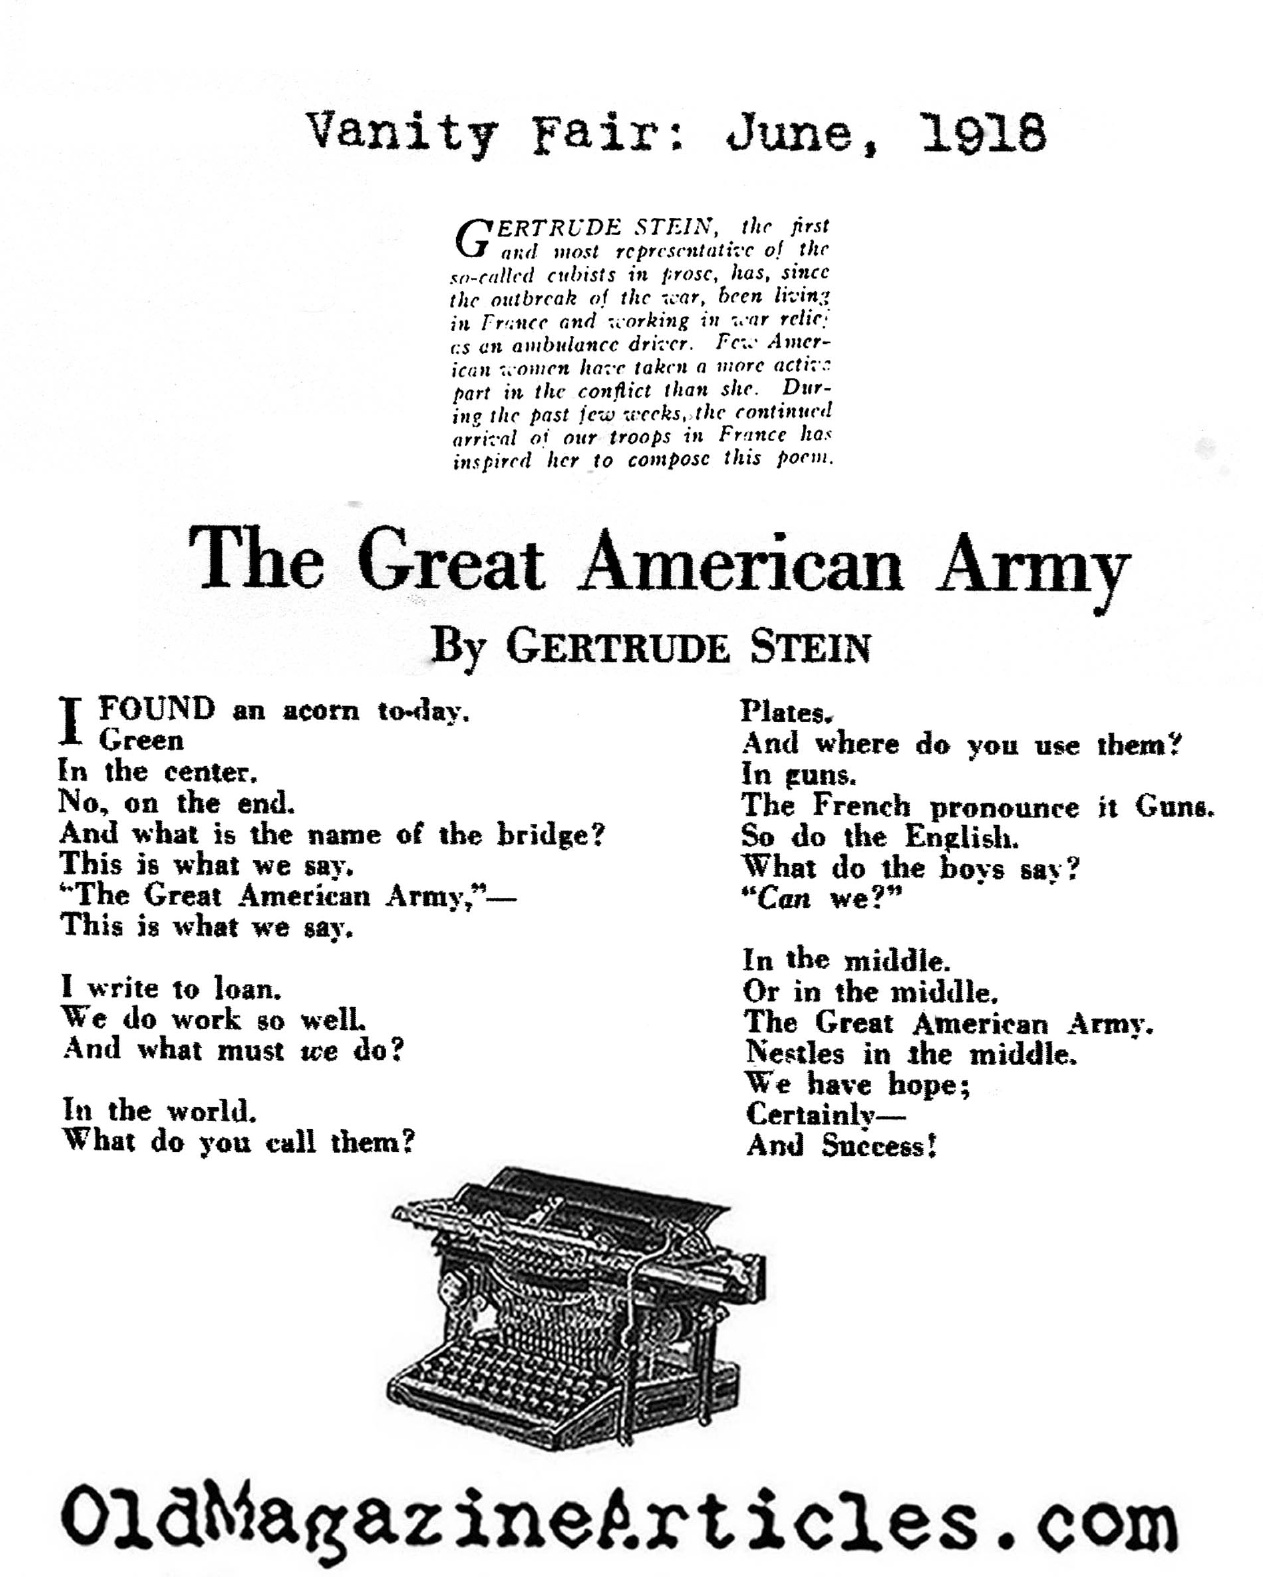 Patriotic Verse by Gertrude Stein (Vanity Fair, 1918)